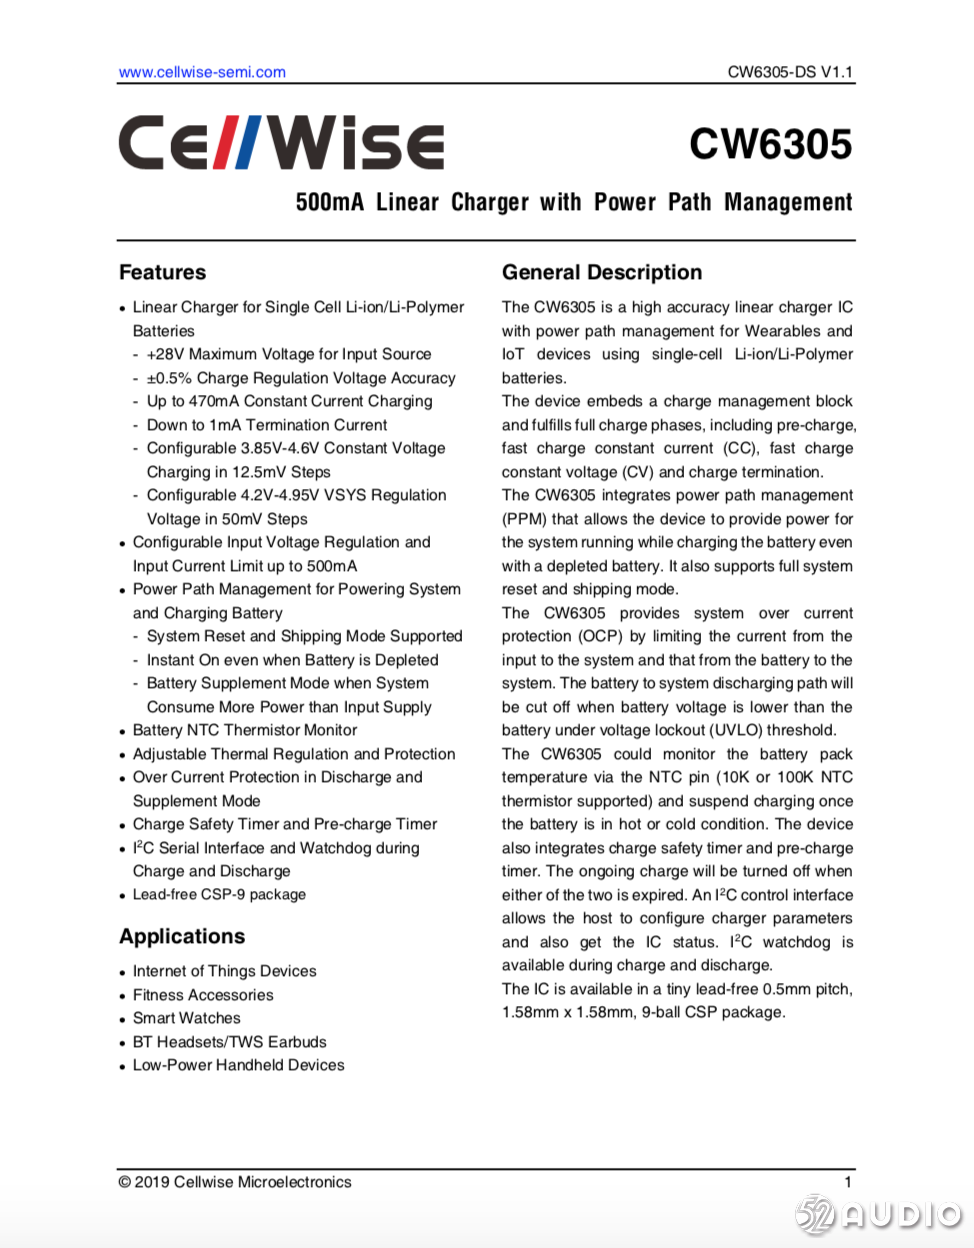 龙8国际官方网站CW6305线性充电芯片获OPPO Enco M31大量采用，精度高、可应用范围广